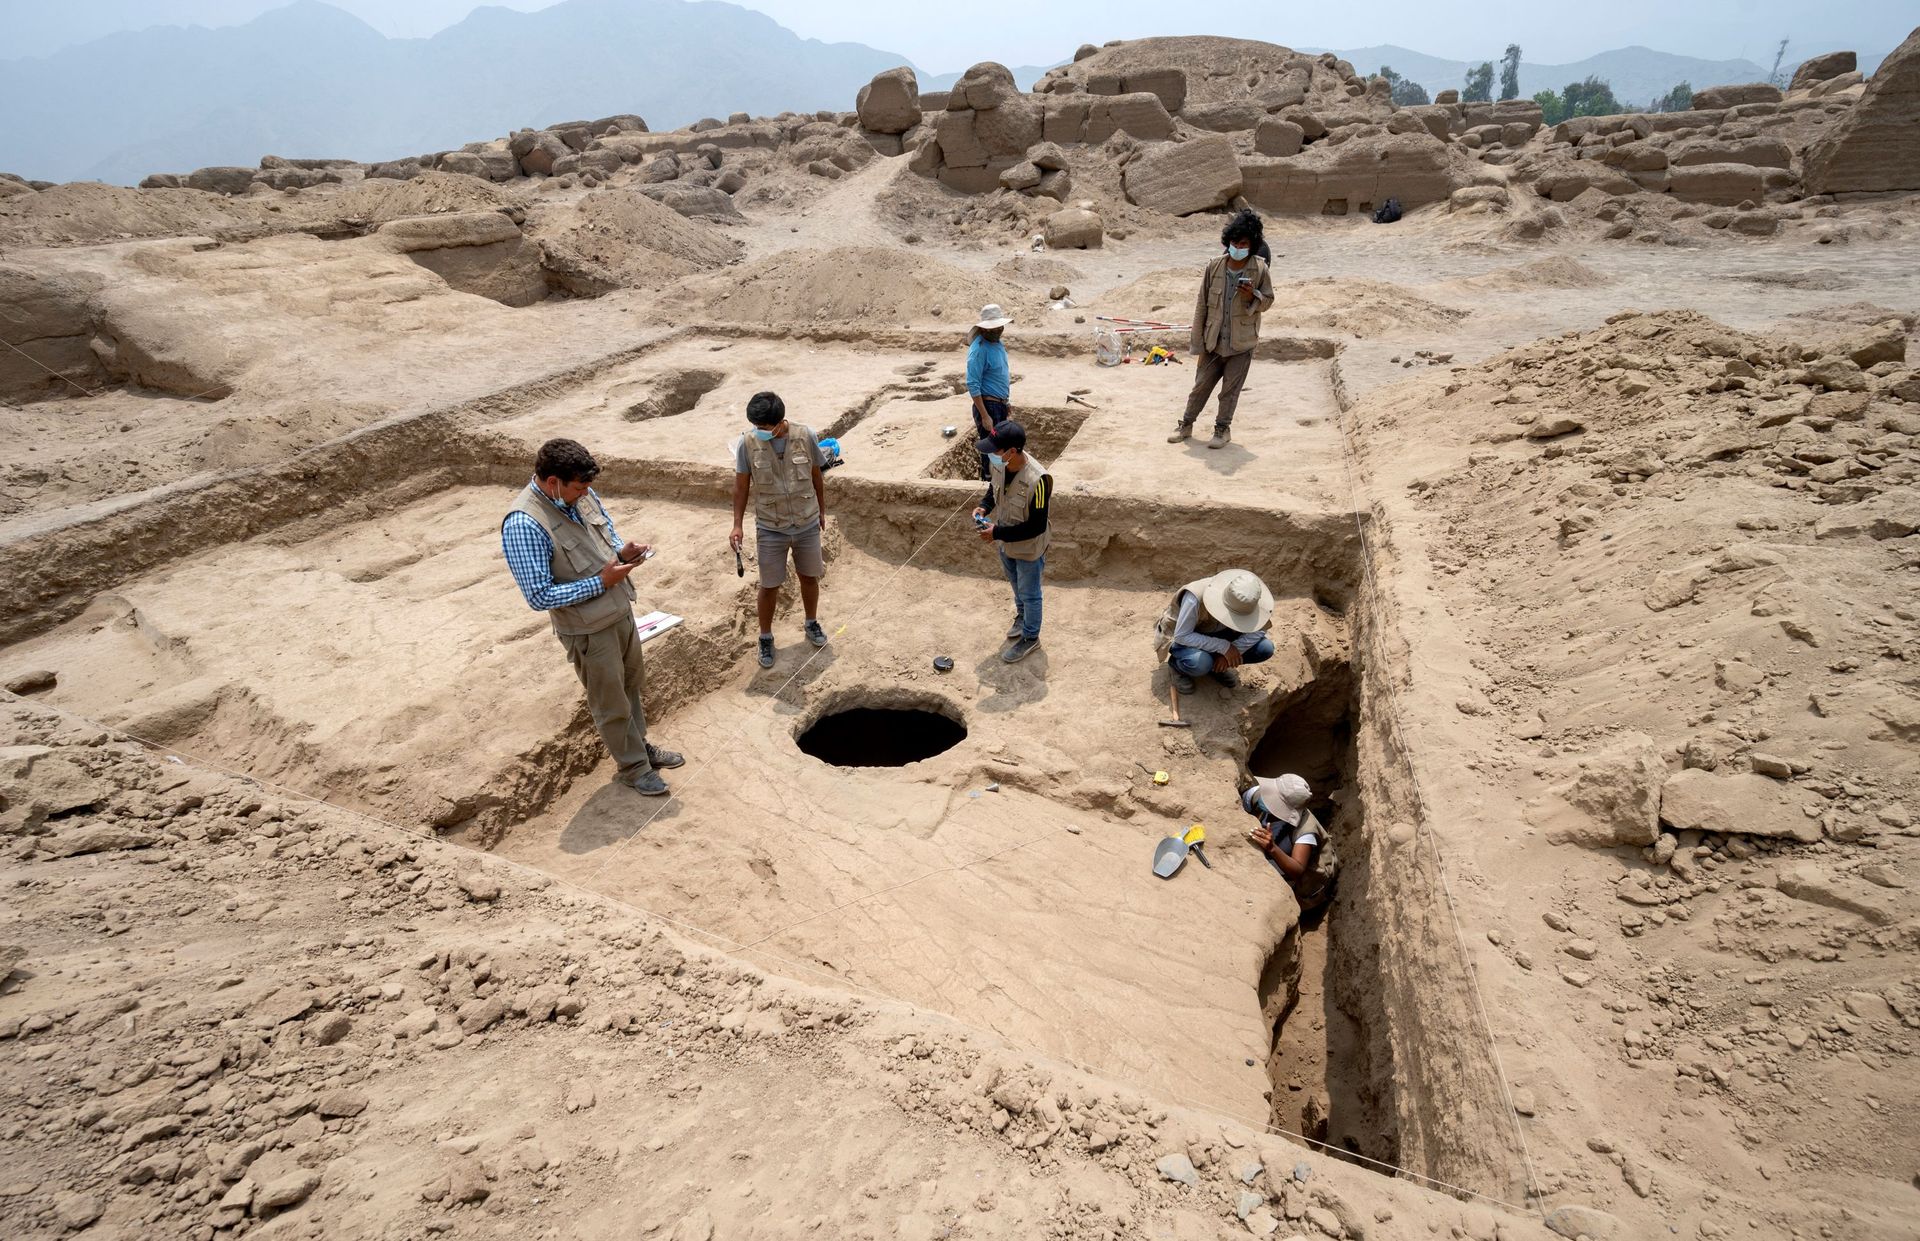 Le puits par lequel les archéologues ont accédé à la tombe